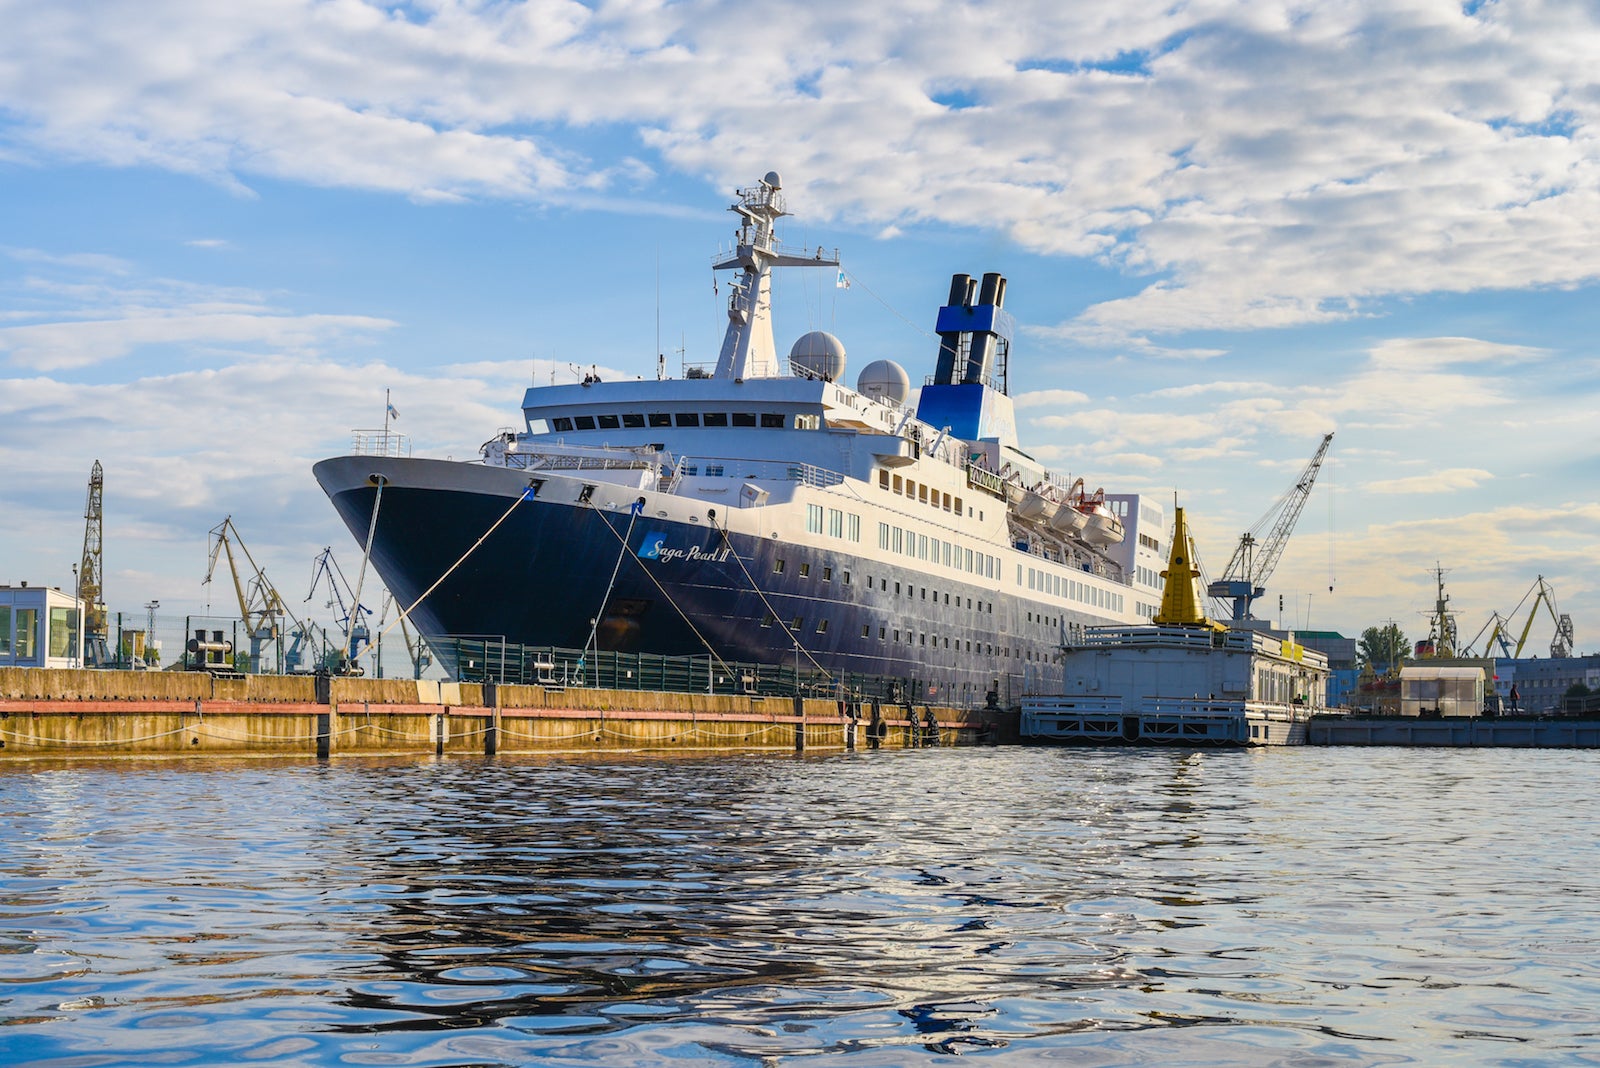 Saga Cruise' Saga Pearl II. (Photo by David Bukochava / Shutterstock)